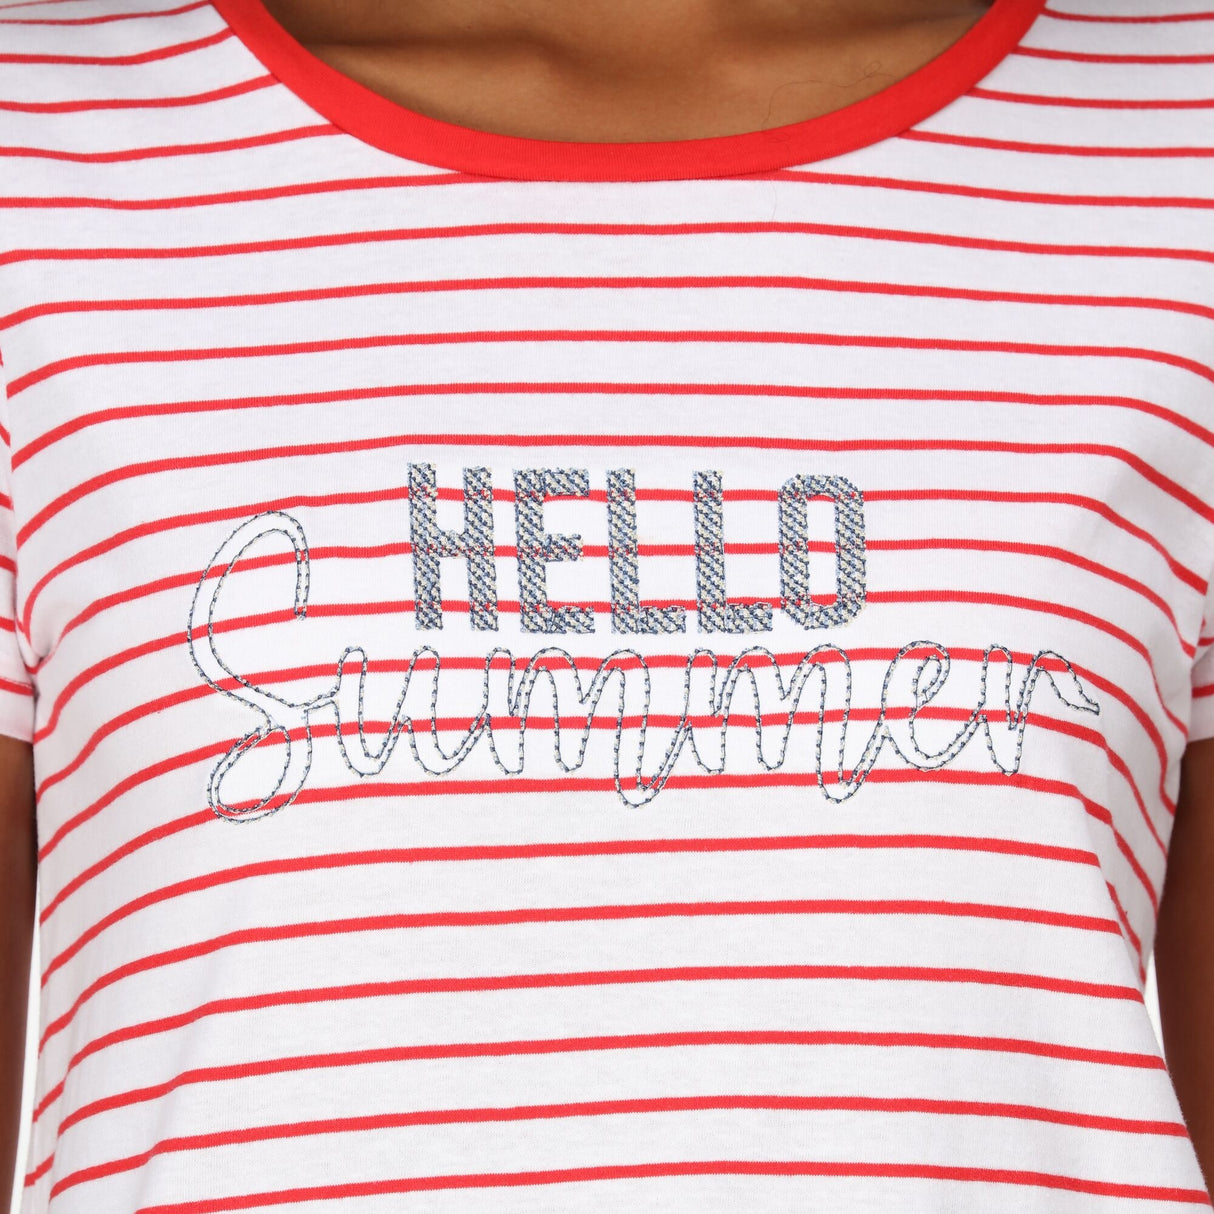 Regatta Womens Odalis II Striped T Shirt